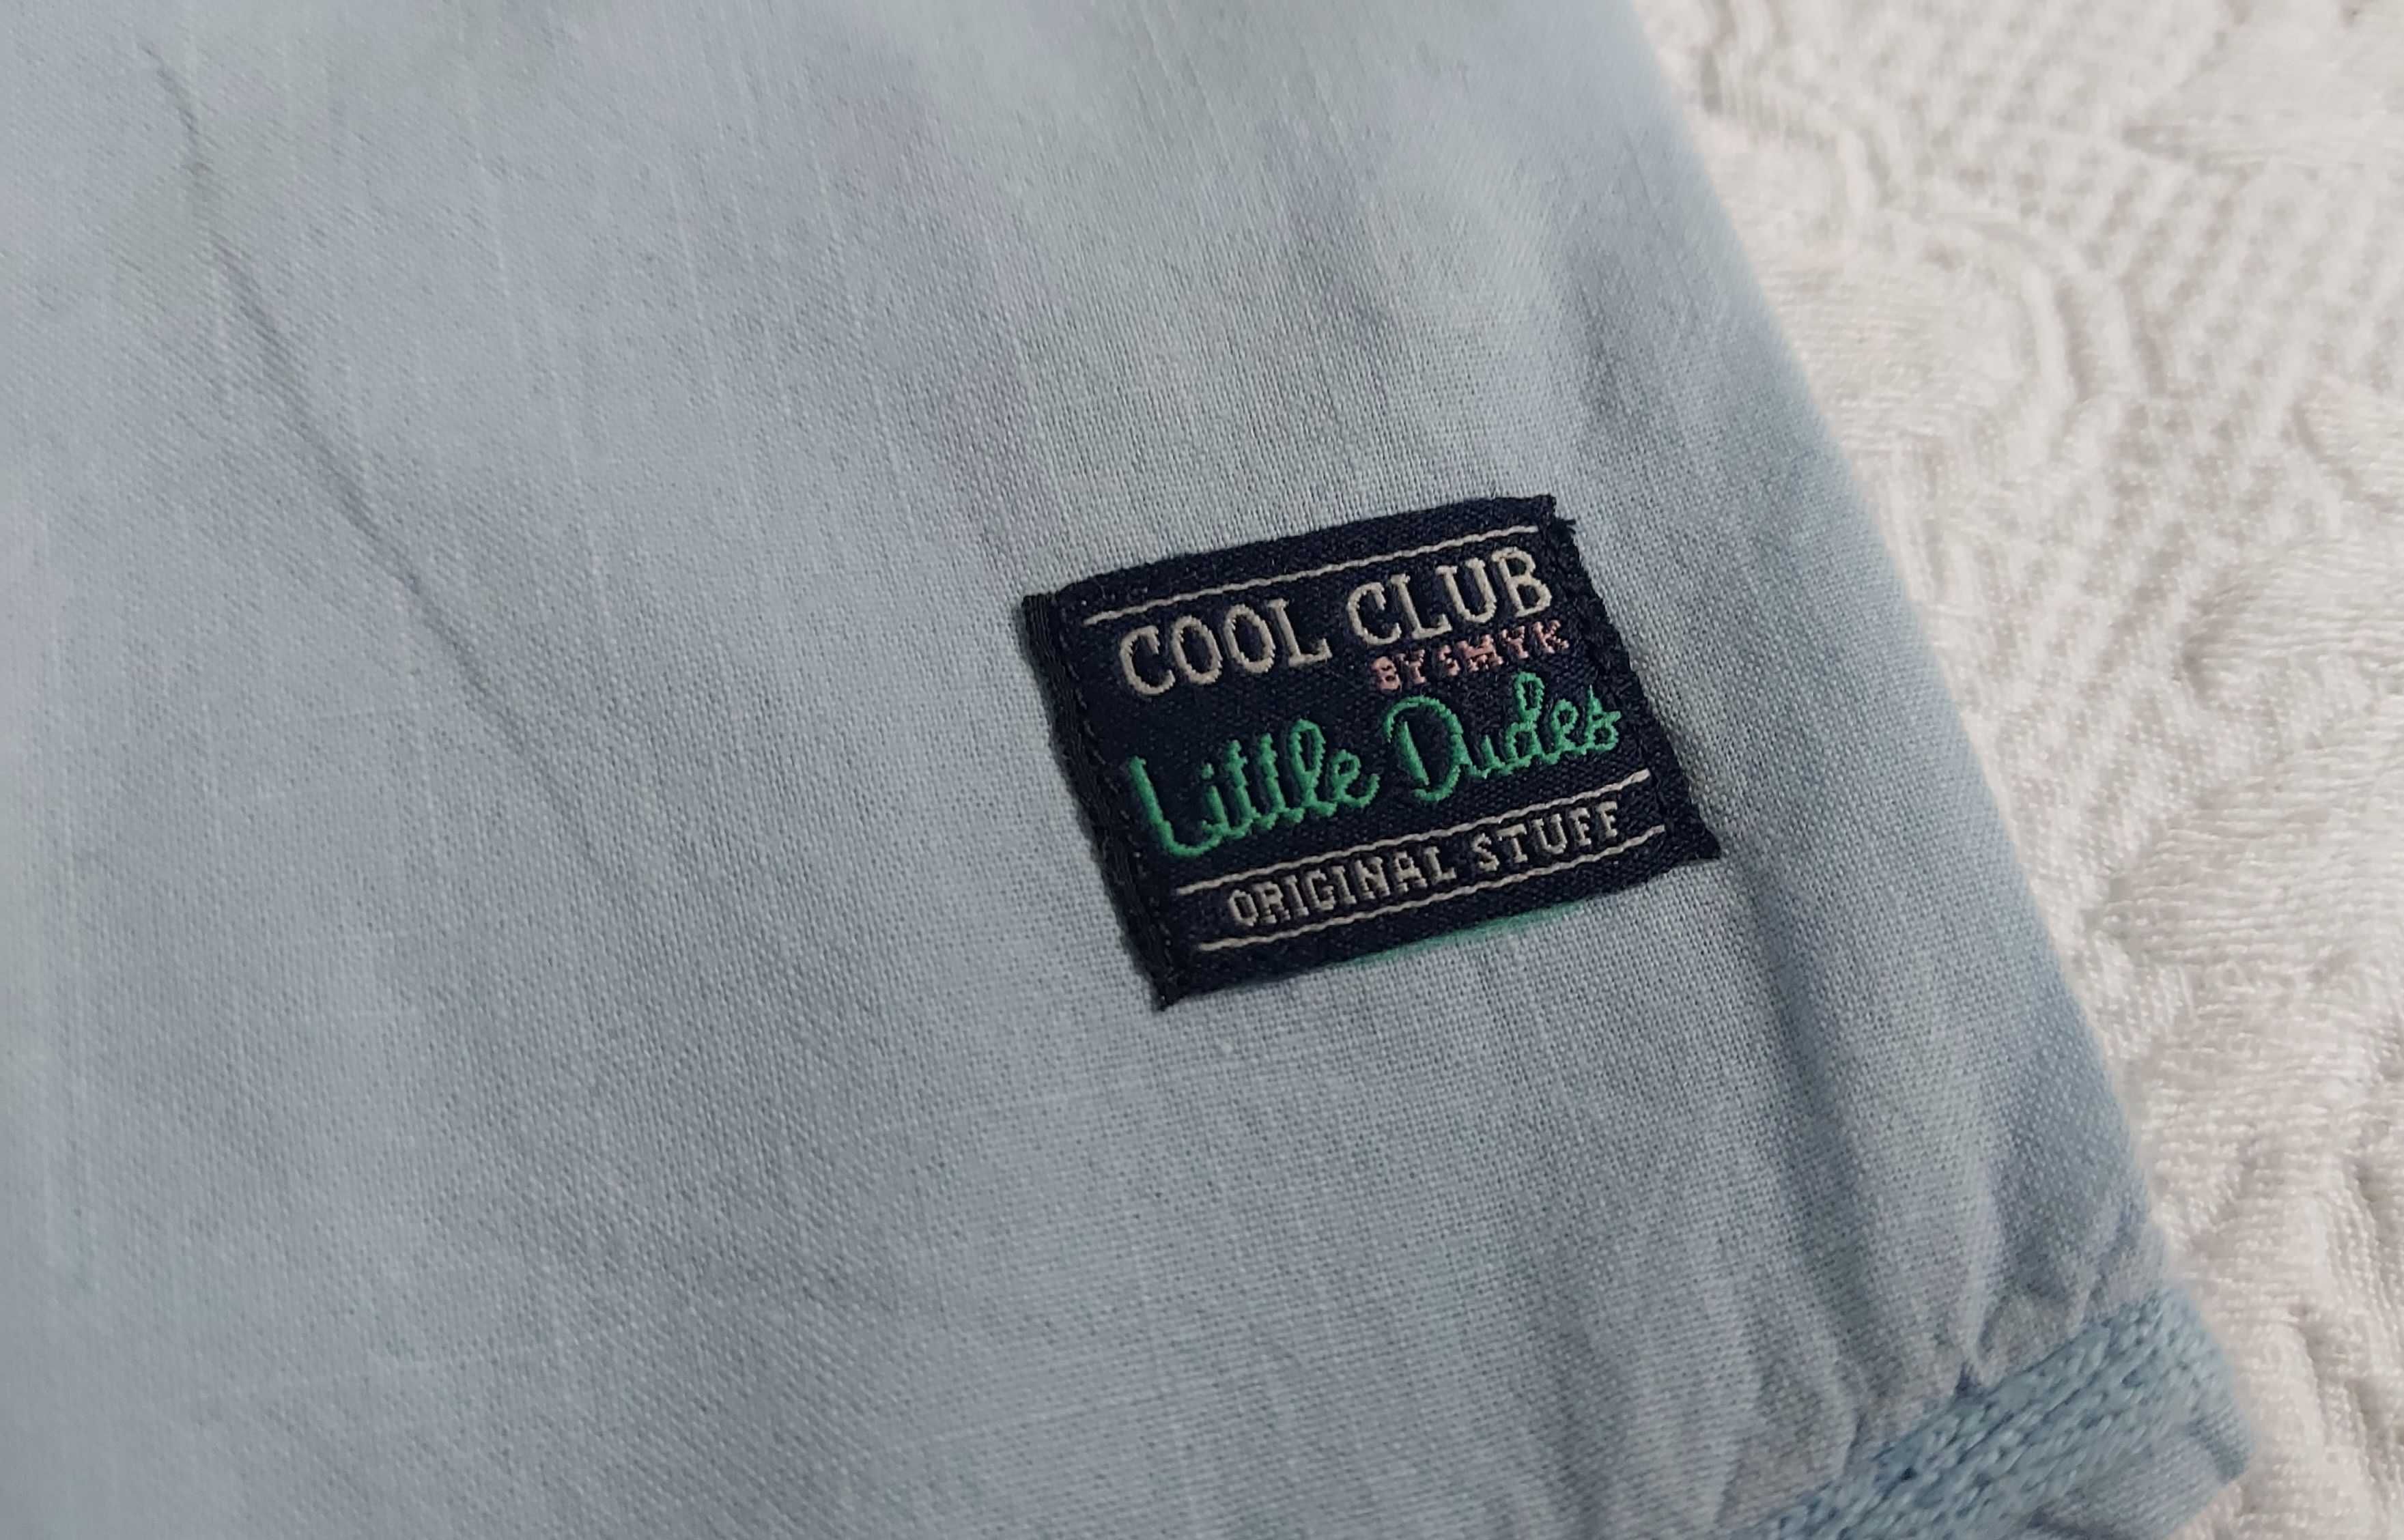 Śliczna błękitna koszula chłopięca niemowlęca Cool Club rozm. 80